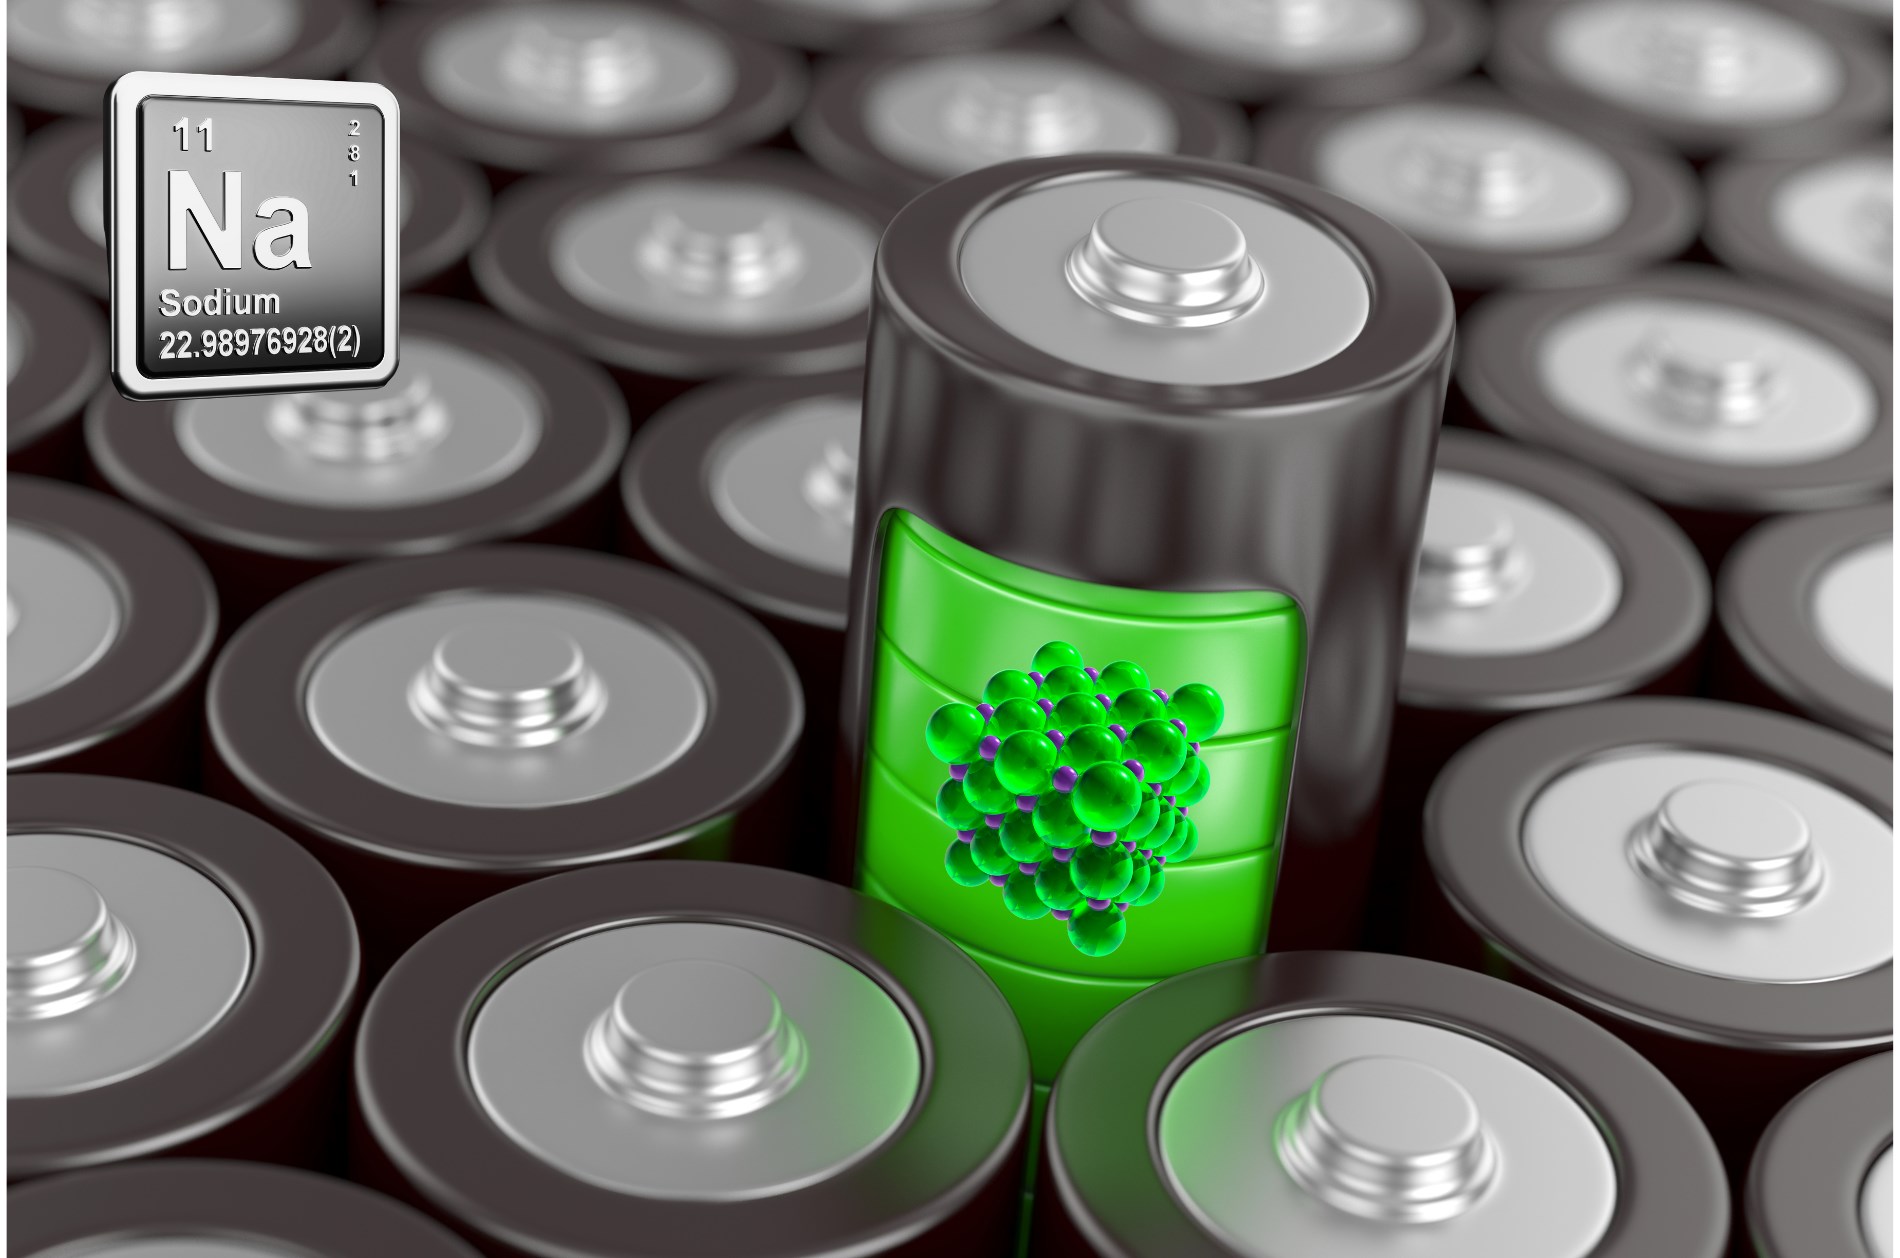 Saniyeler içinde şarj edilebilen yeni sodyum batarya geliştirildi